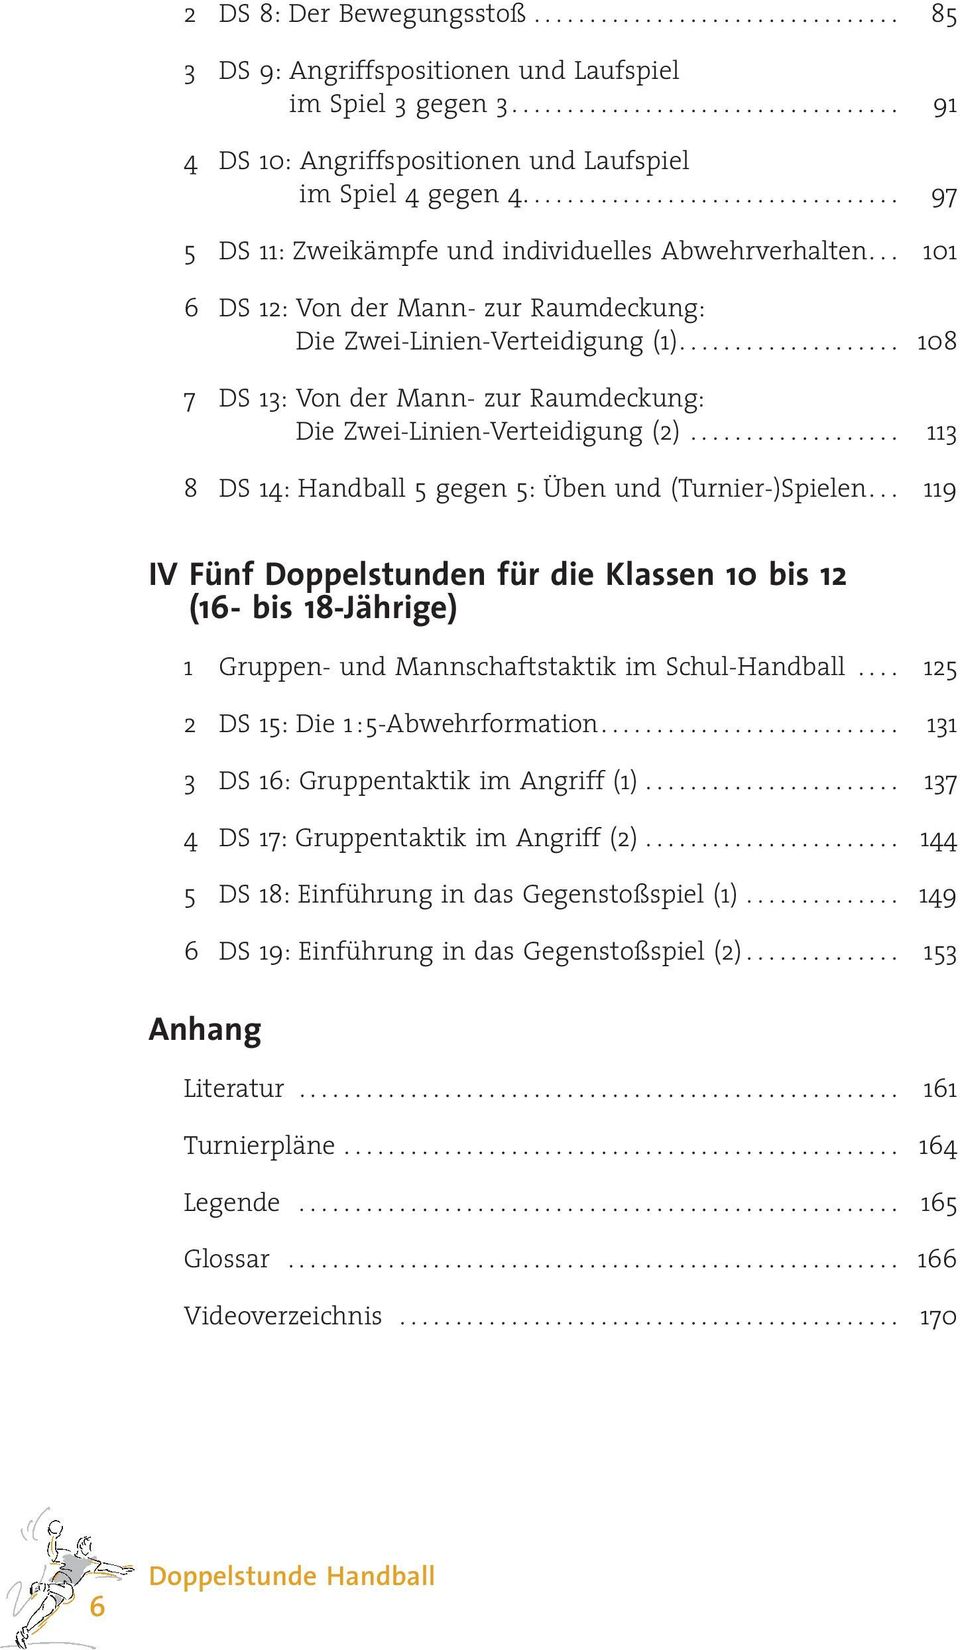 ... 108 7 DS 13: Von der Mann- zur Raumdeckung: Die Zwei-Linien-Verteidigung (2)... 113 8 DS 14: Handball 5 gegen 5: Üben und (Turnier-)Spielen.